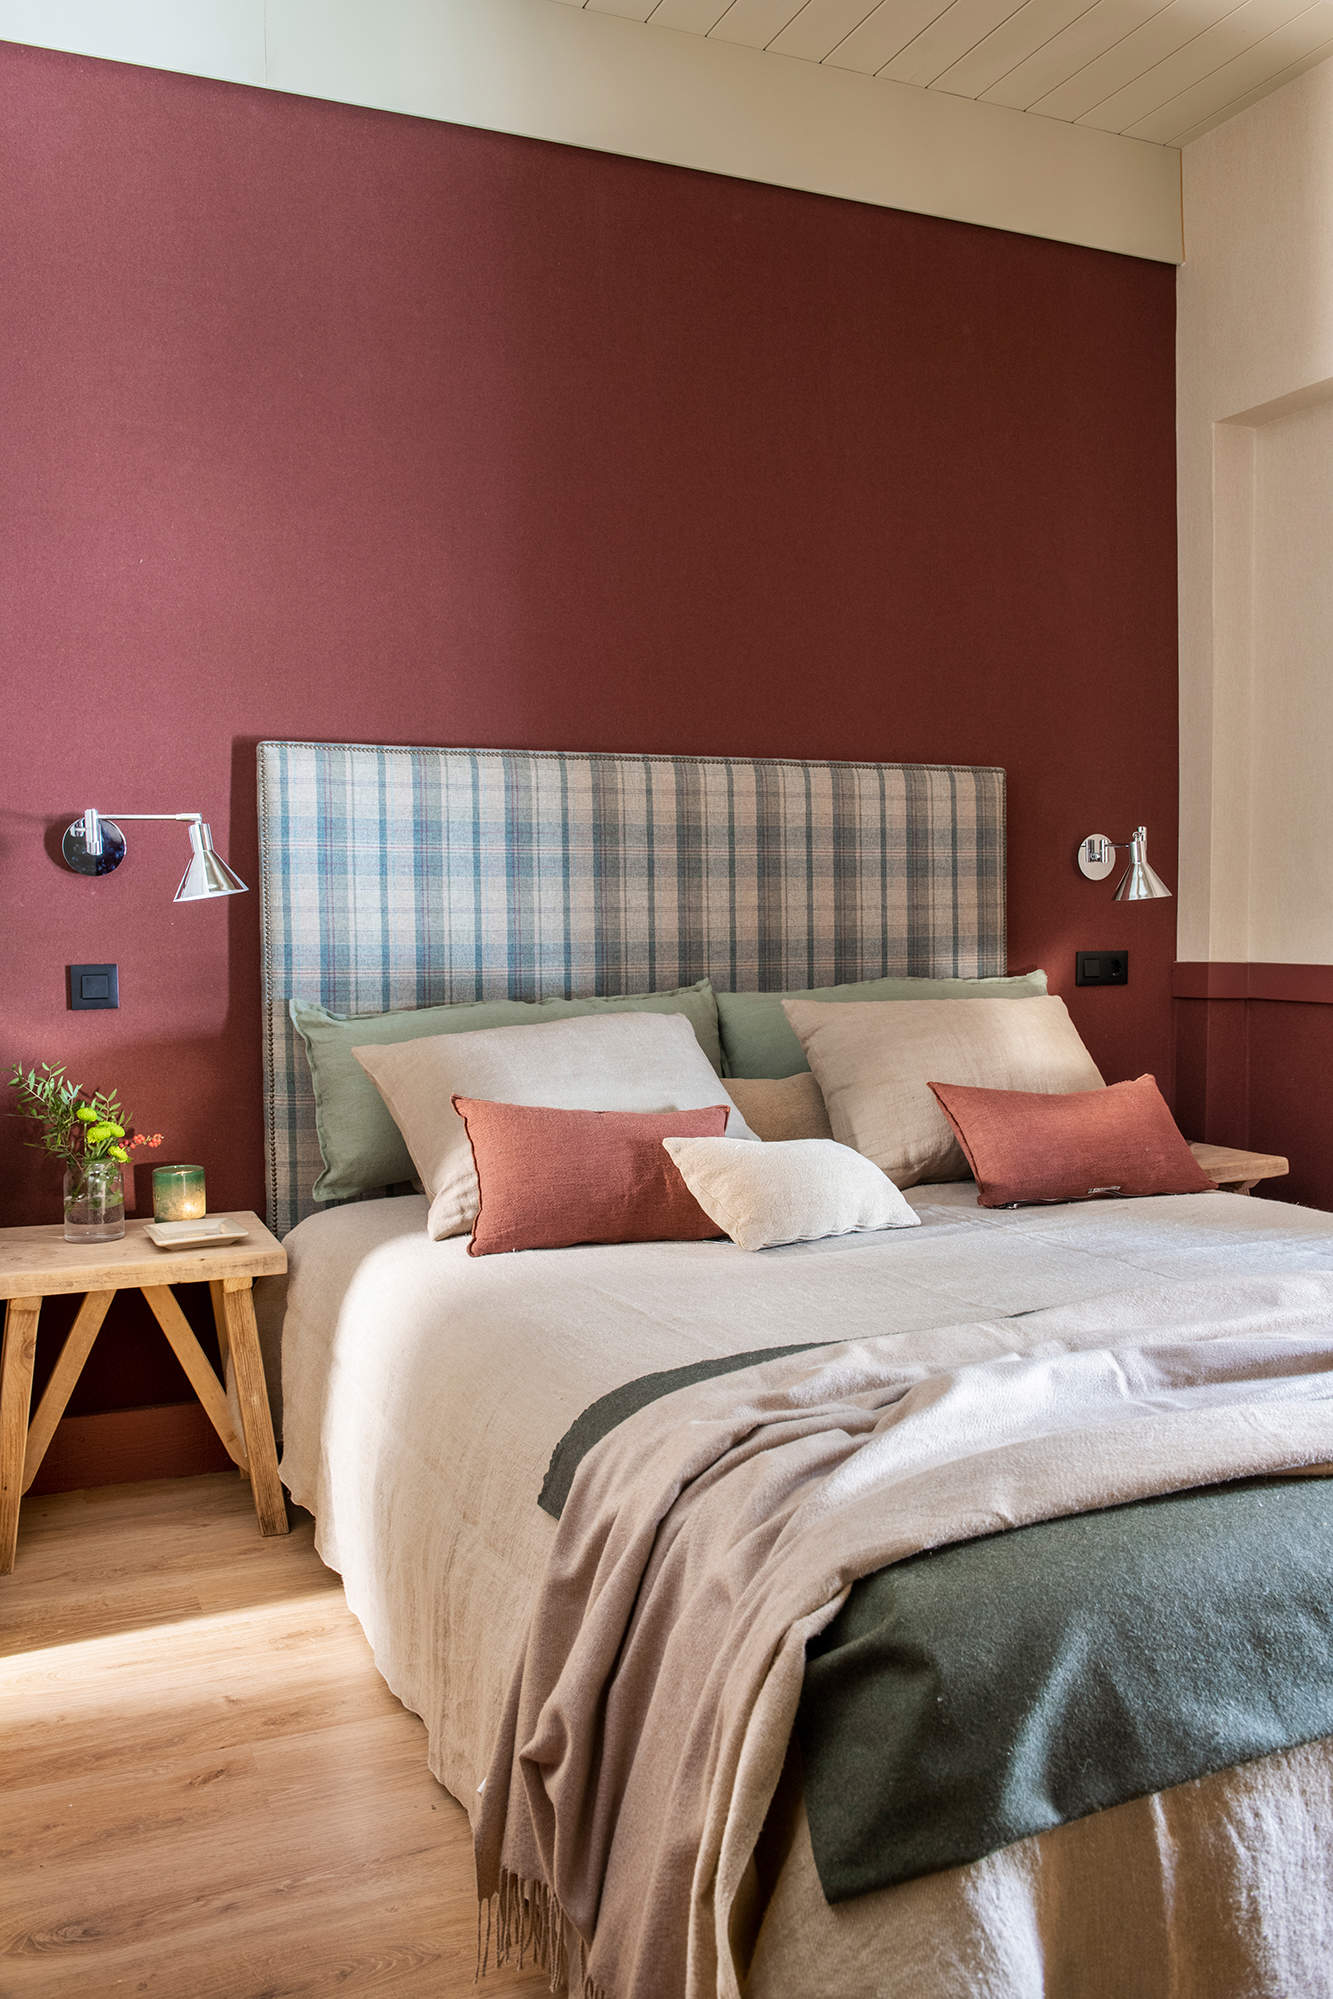 Dormitorio con pared del cabecero pintado en granate, cabecero tapizado de cuadros, mesilla de madera y ropa de cama en beige y verde.